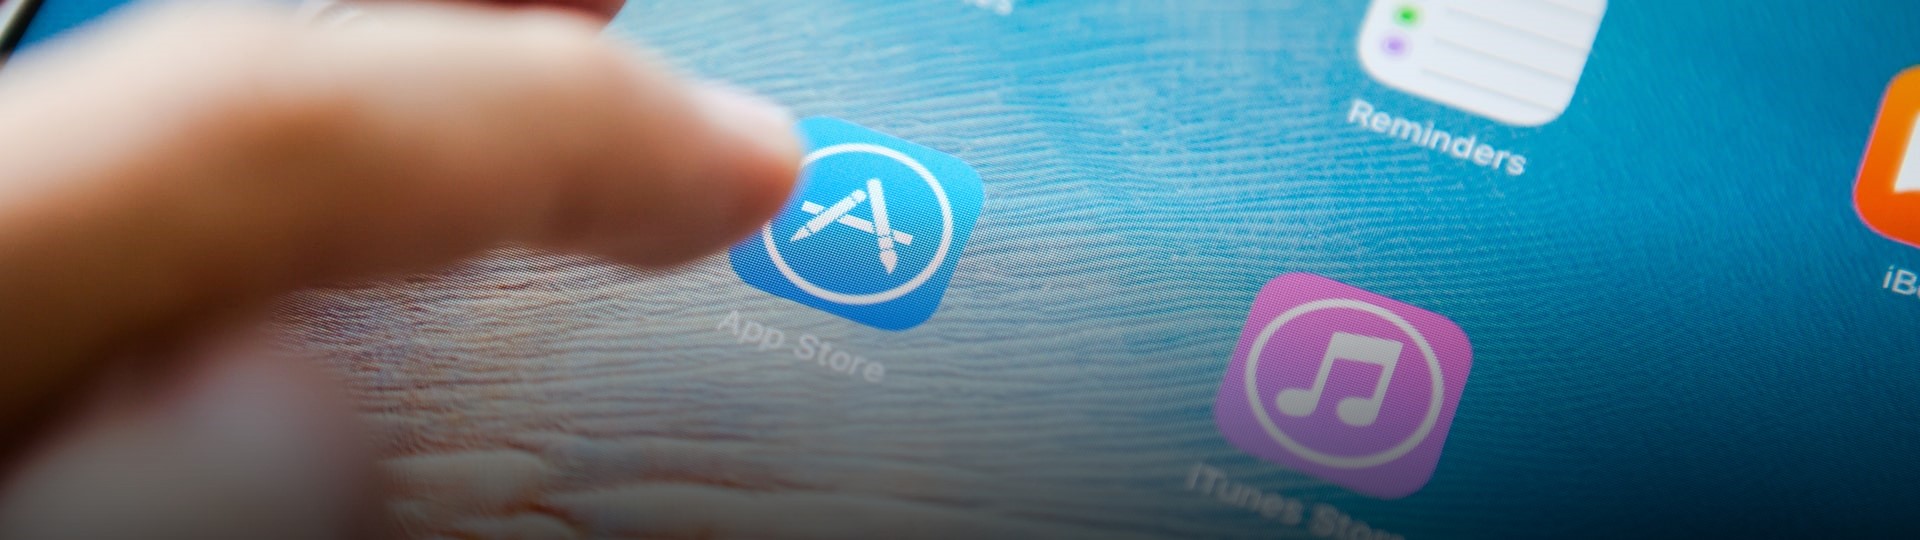 Apple čeká zásadní soudní spor, jde v něm o poplatky v App Store